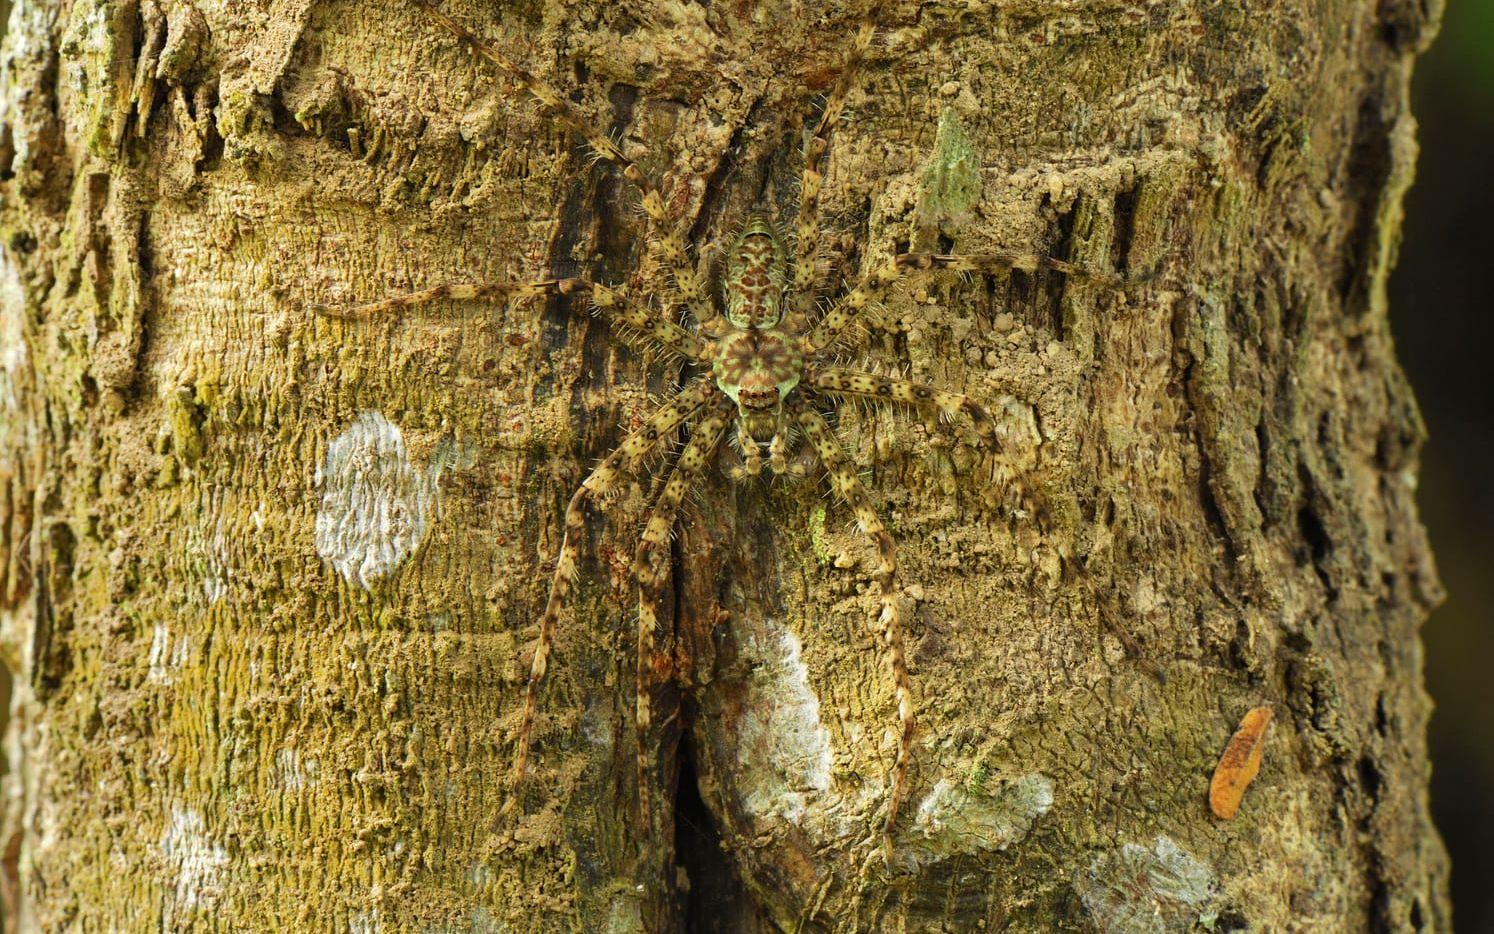 En jättekrabbspindel (Pandercetes gracilis) smälter in mot trädstammen.  Foto: IBL